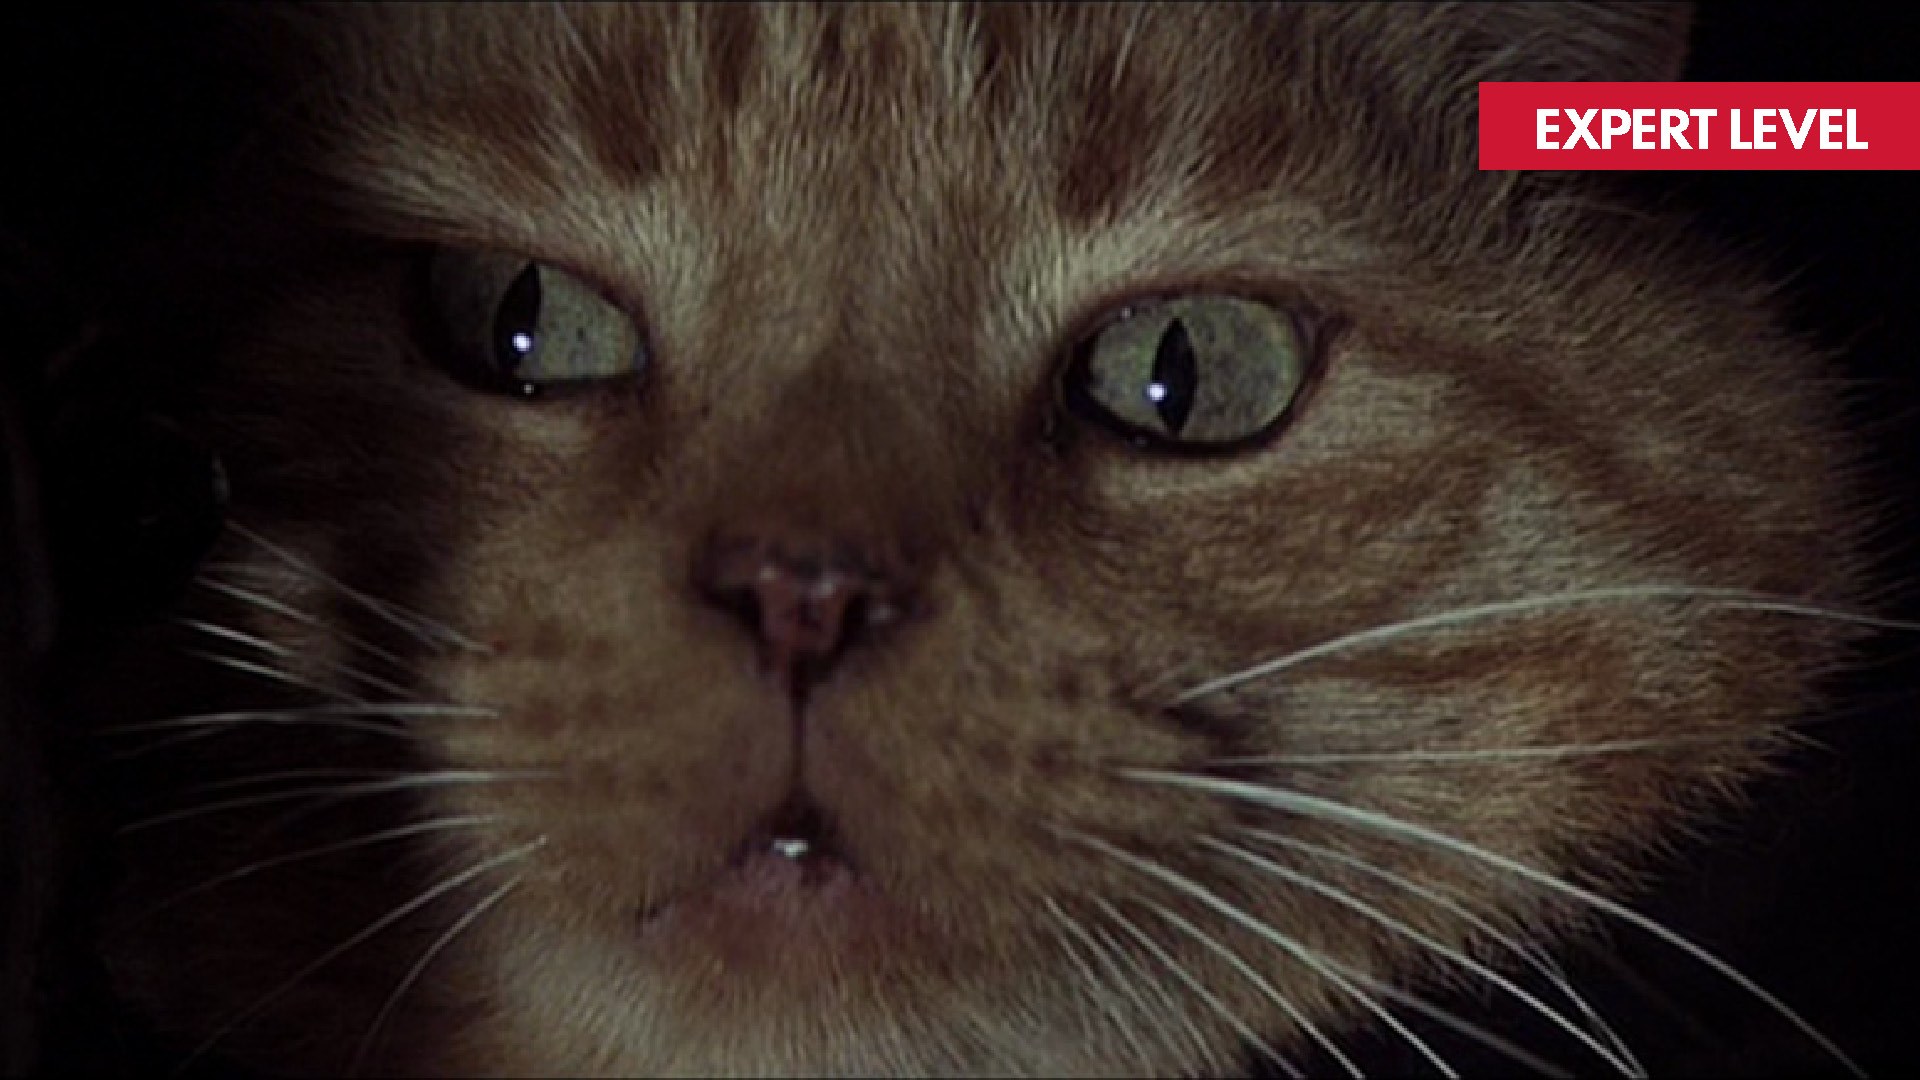 ALIEN Film Still - image of a cat